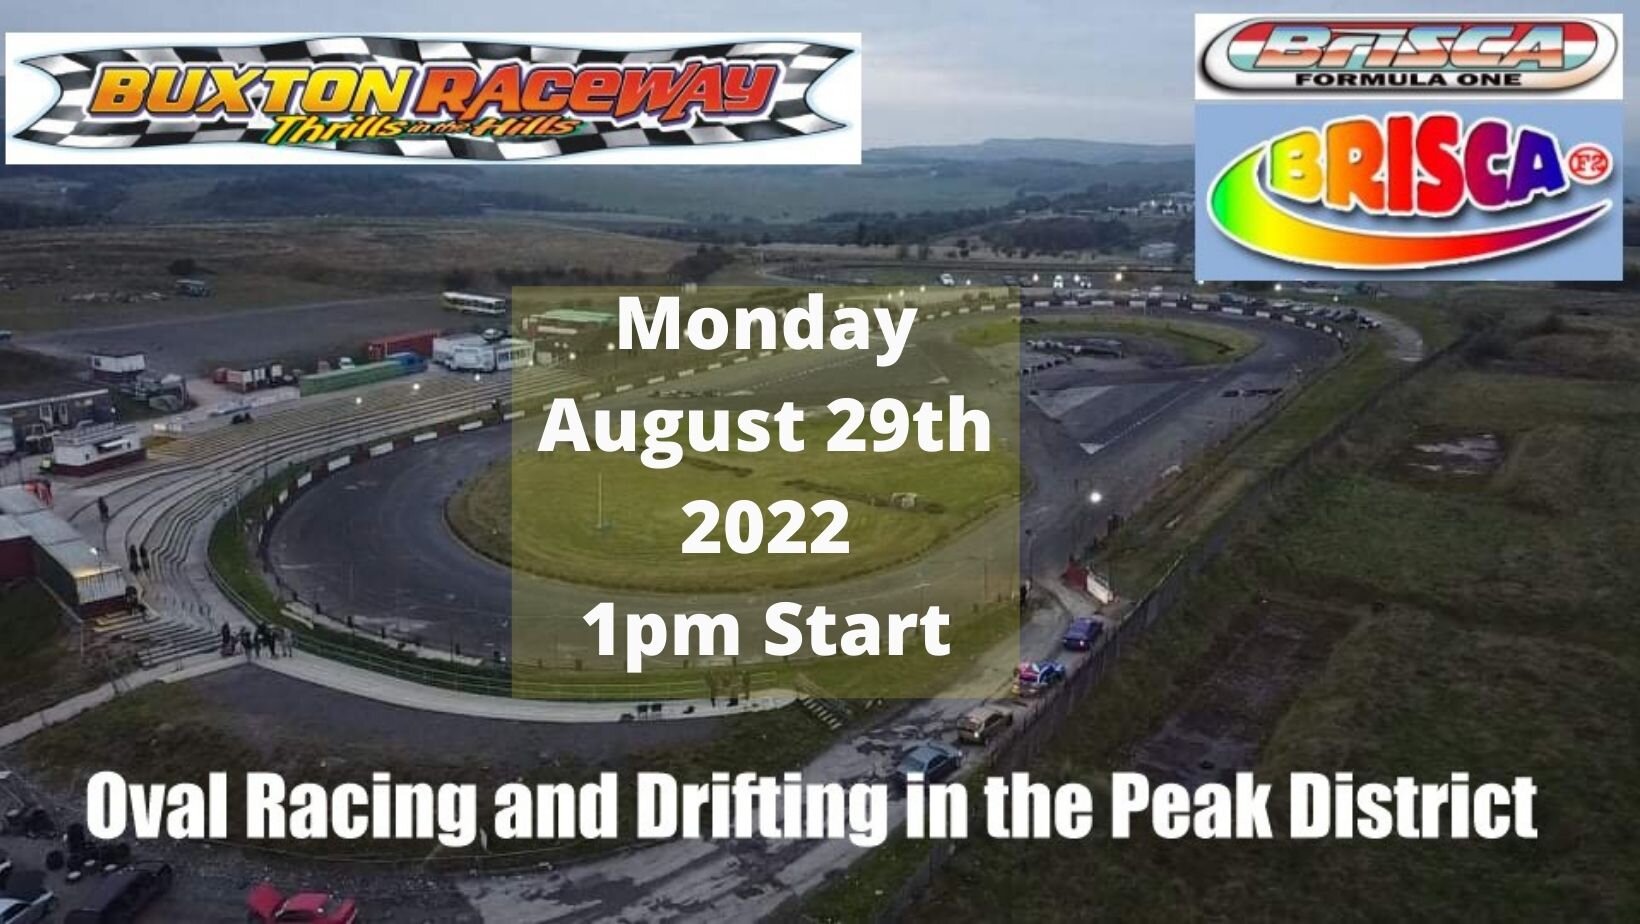 Buxton Raceway | Monday 29th August 1pm